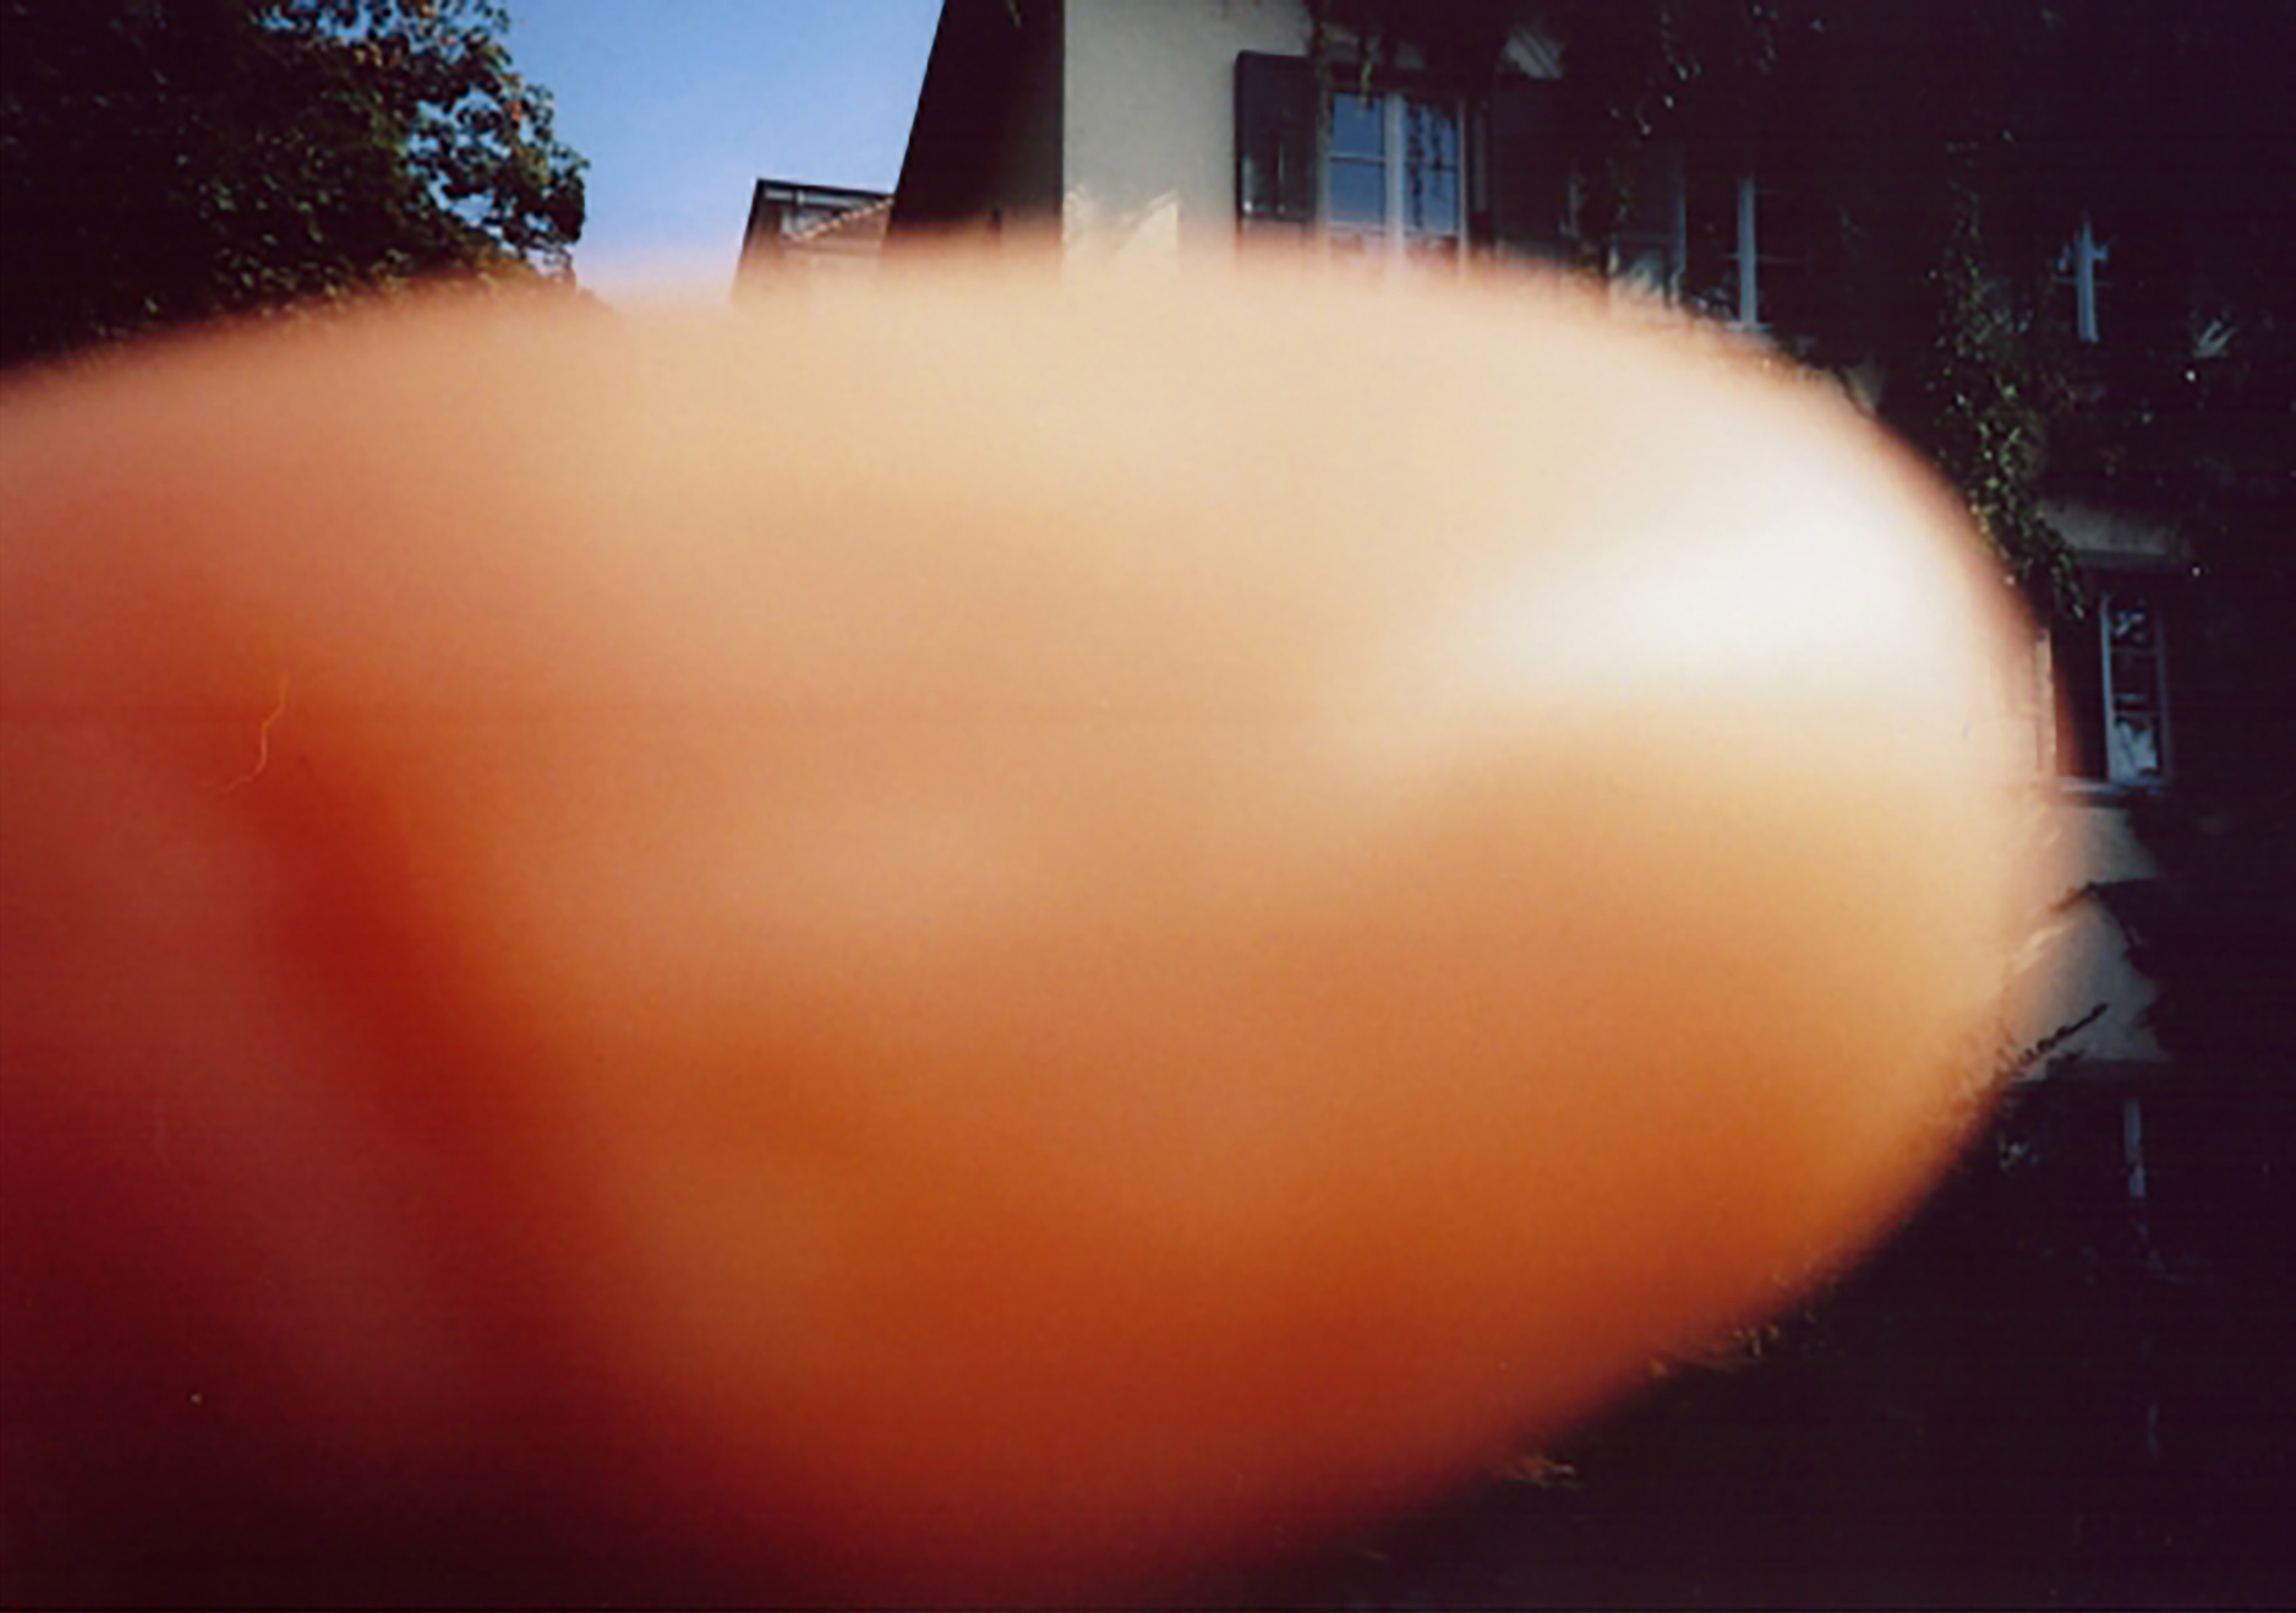 Szinte minden képen #13 – A képkészítés történetének leggyakoribb hibája: az óriás ujj támadása. 2014 © Erik Kessels